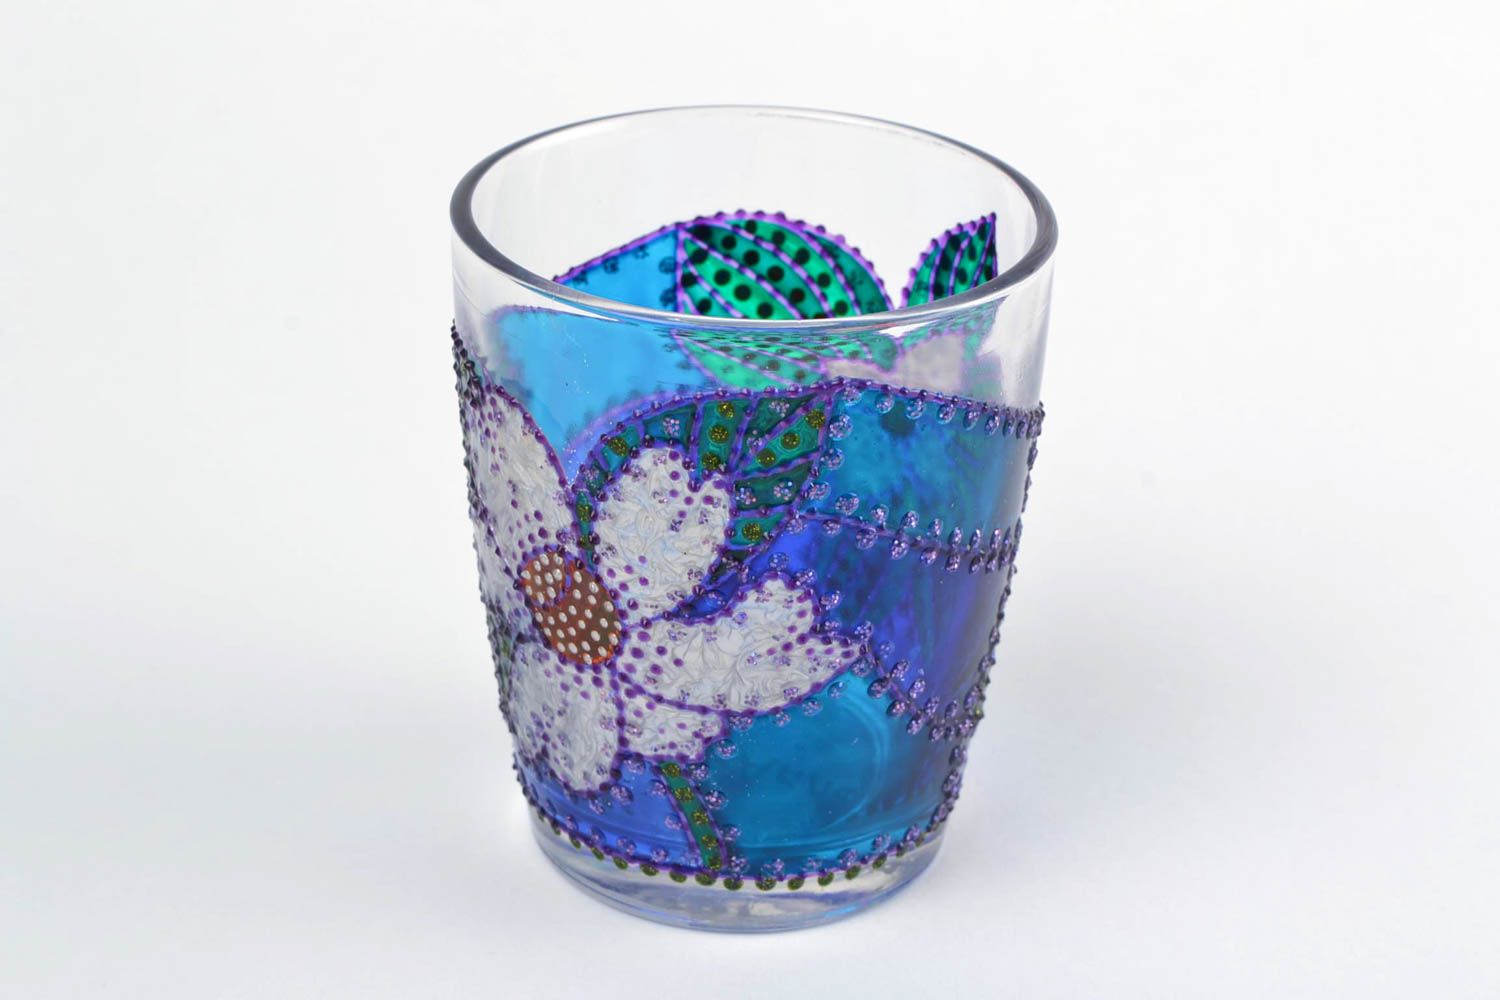 Chandelier en verre avec fleurs peintes de couleurs acryliques fait main photo 5